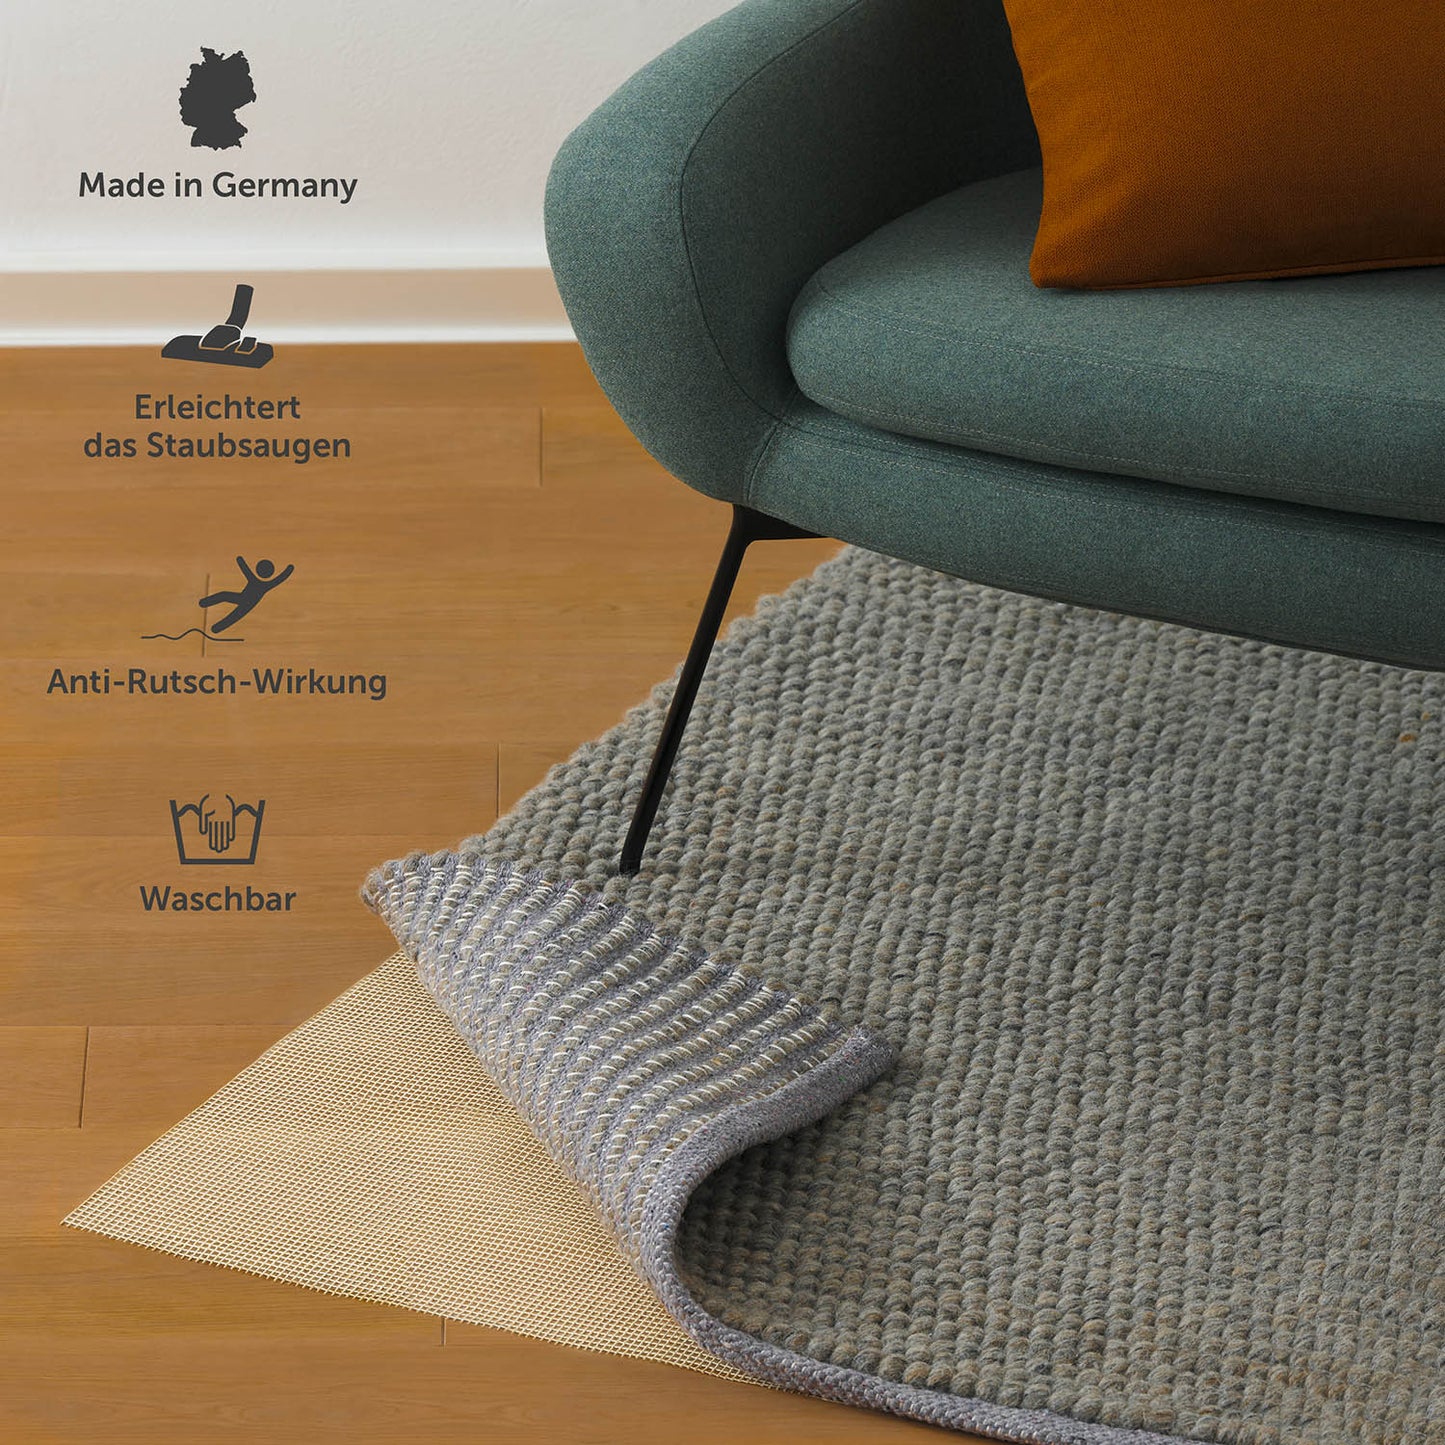 Antirutschmatte unter einem grauen Teppich mit grünem Stuhl darauf, Text hervorhebt "Made in Germany", waschbar und Anti-Rutsch-Eigenschaften.